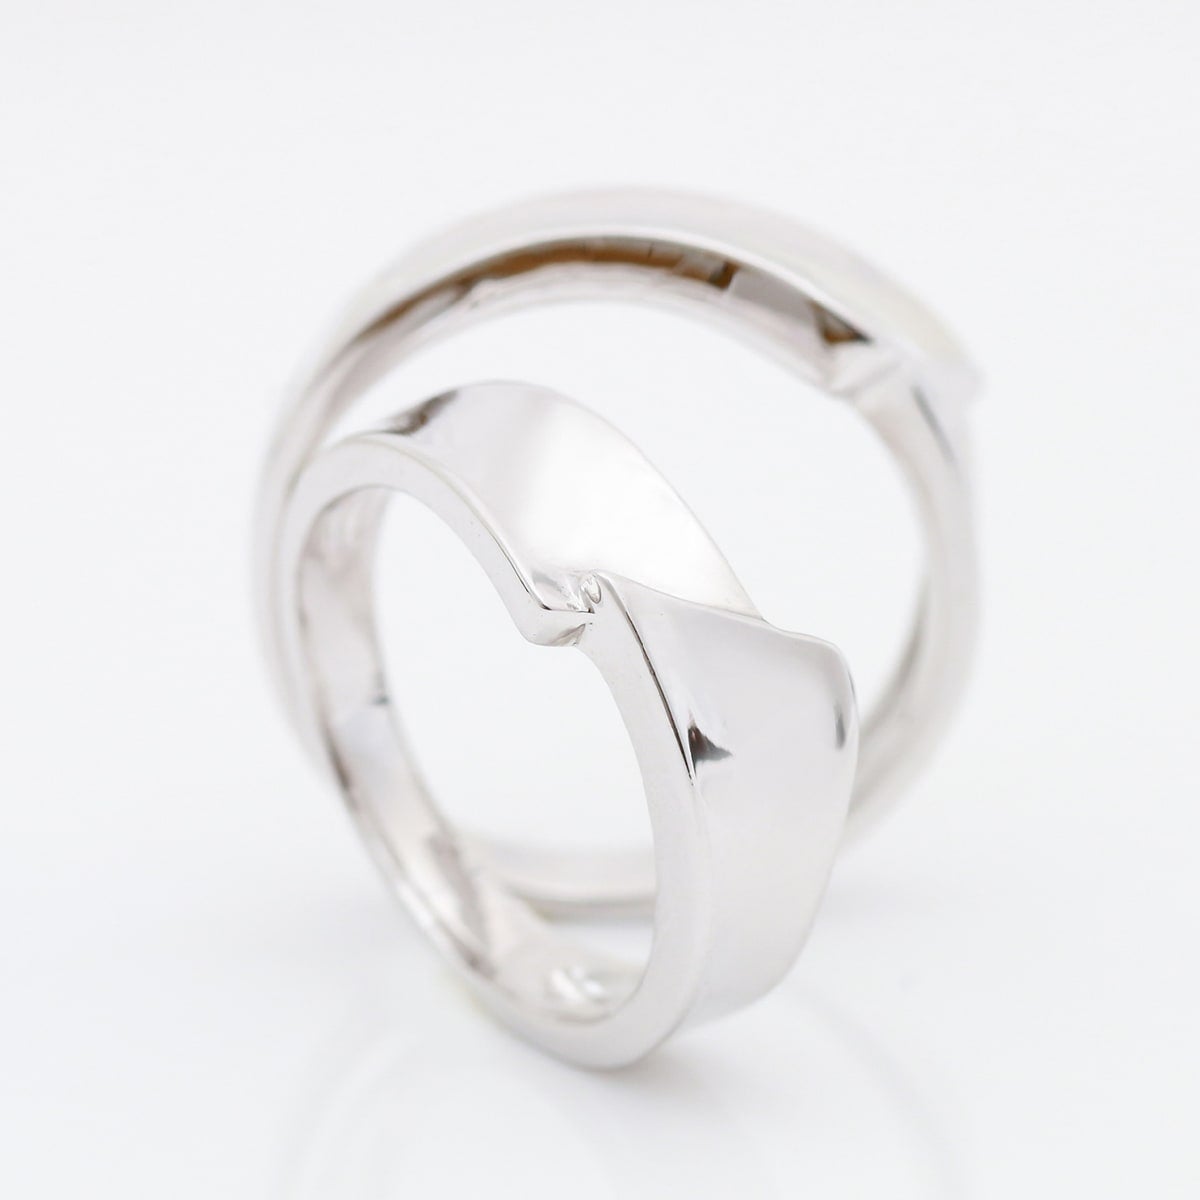 結婚指輪 2本セット | 16871-16870